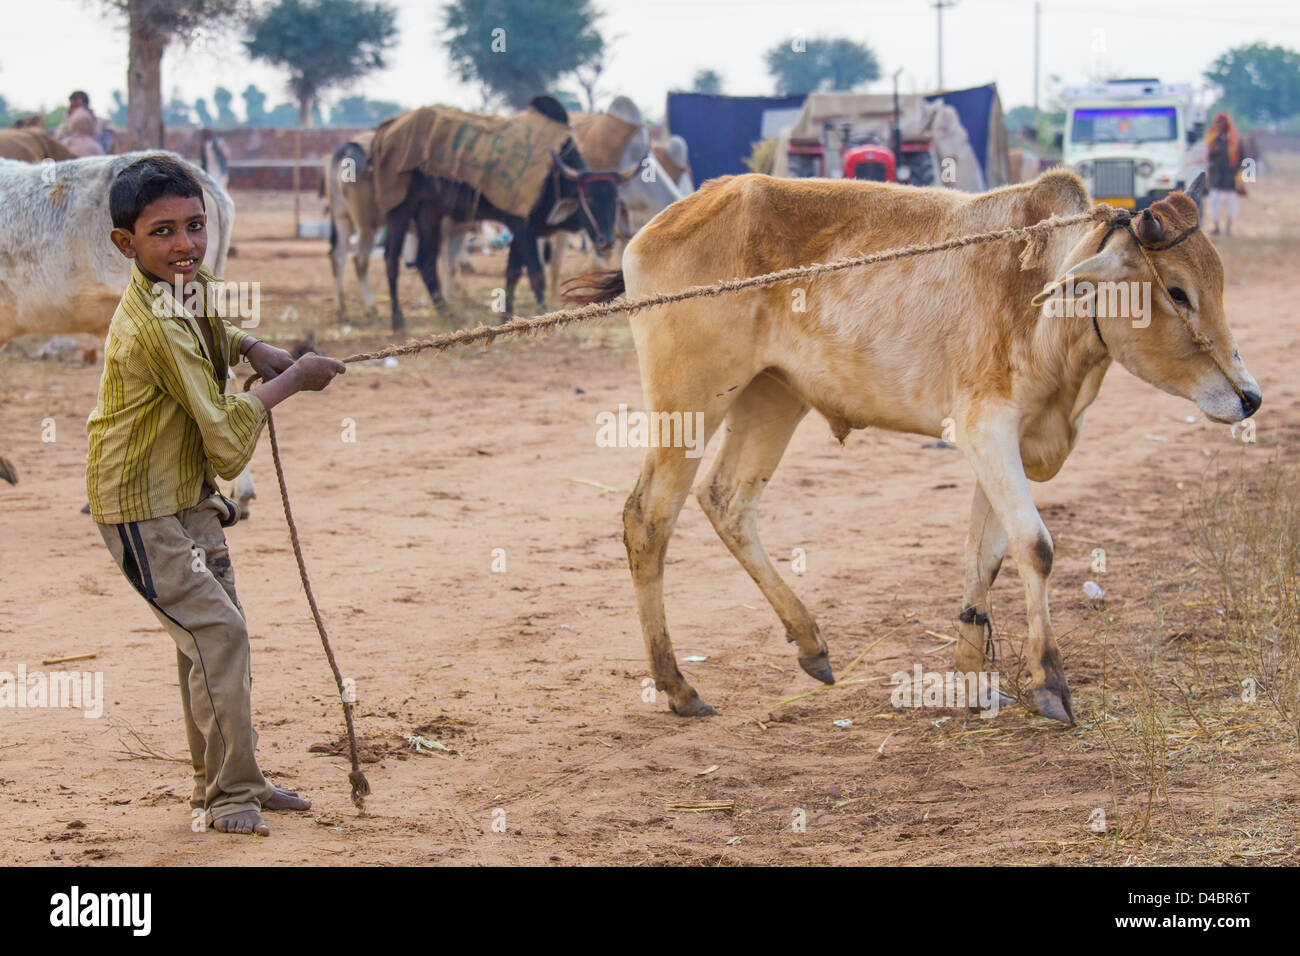 Garçon, une vache de manutention du bétail Nagaur, équitable, Nagaur Rajasthan, Inde Banque D'Images